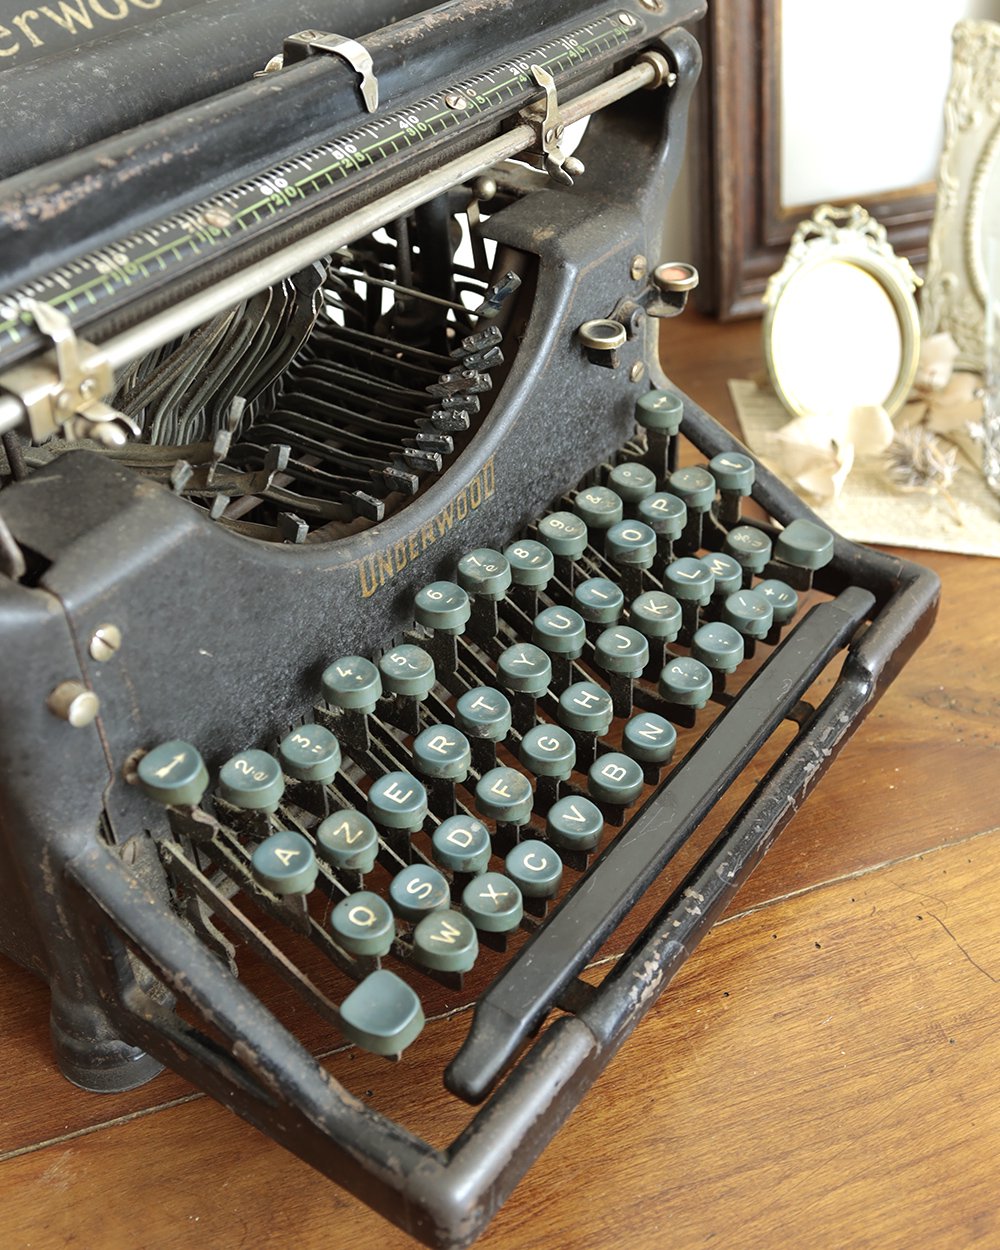 アンティーク Underwood Typewriter Company 製 タイプライター